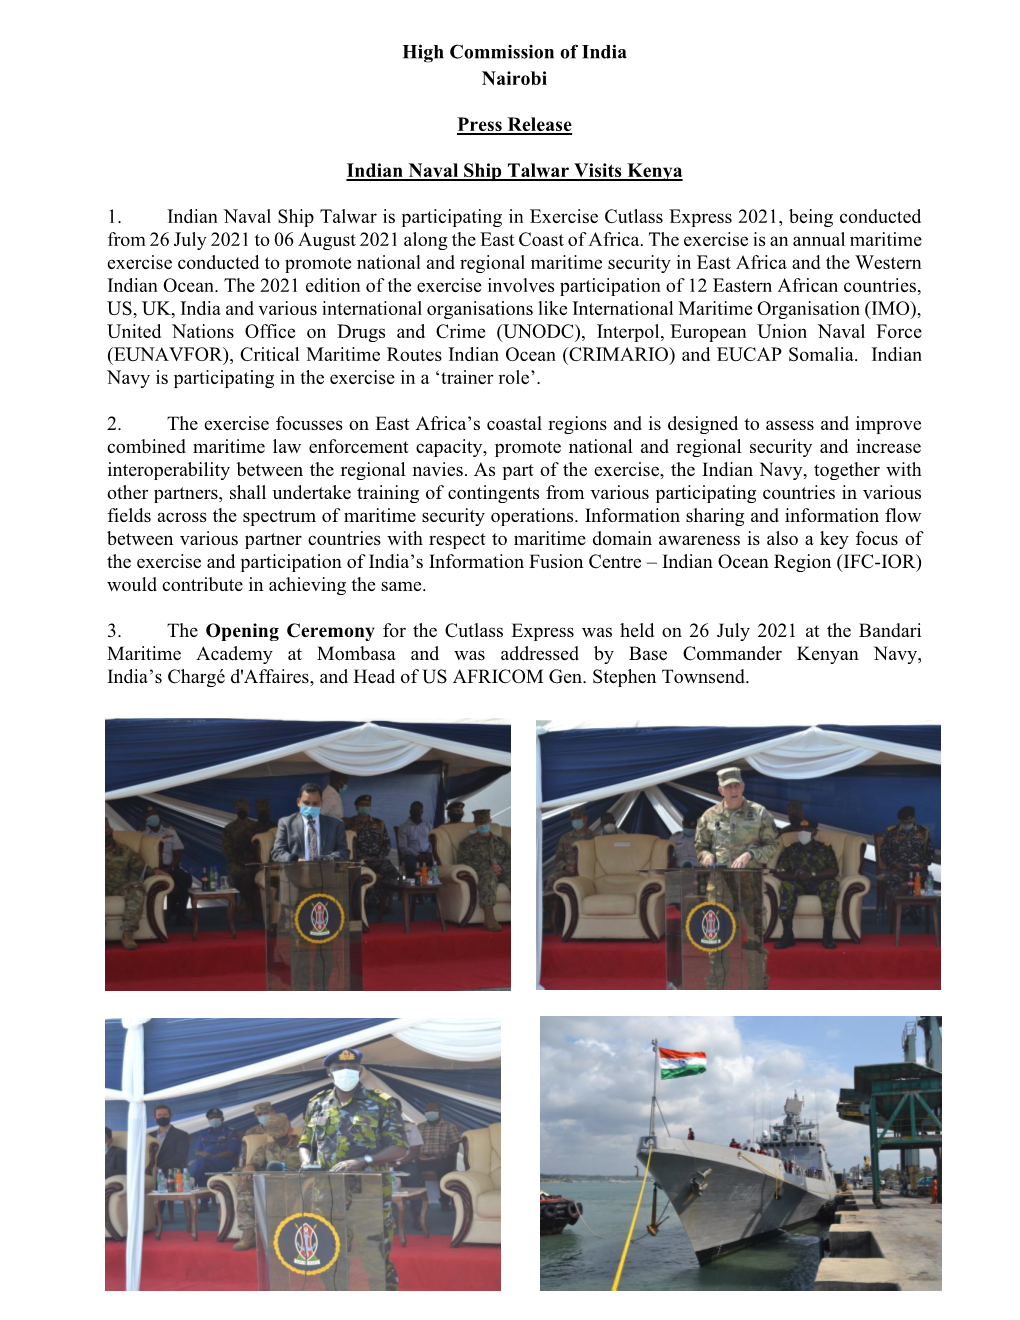 Visit of Indian Naval Ship Talwar to Kenya